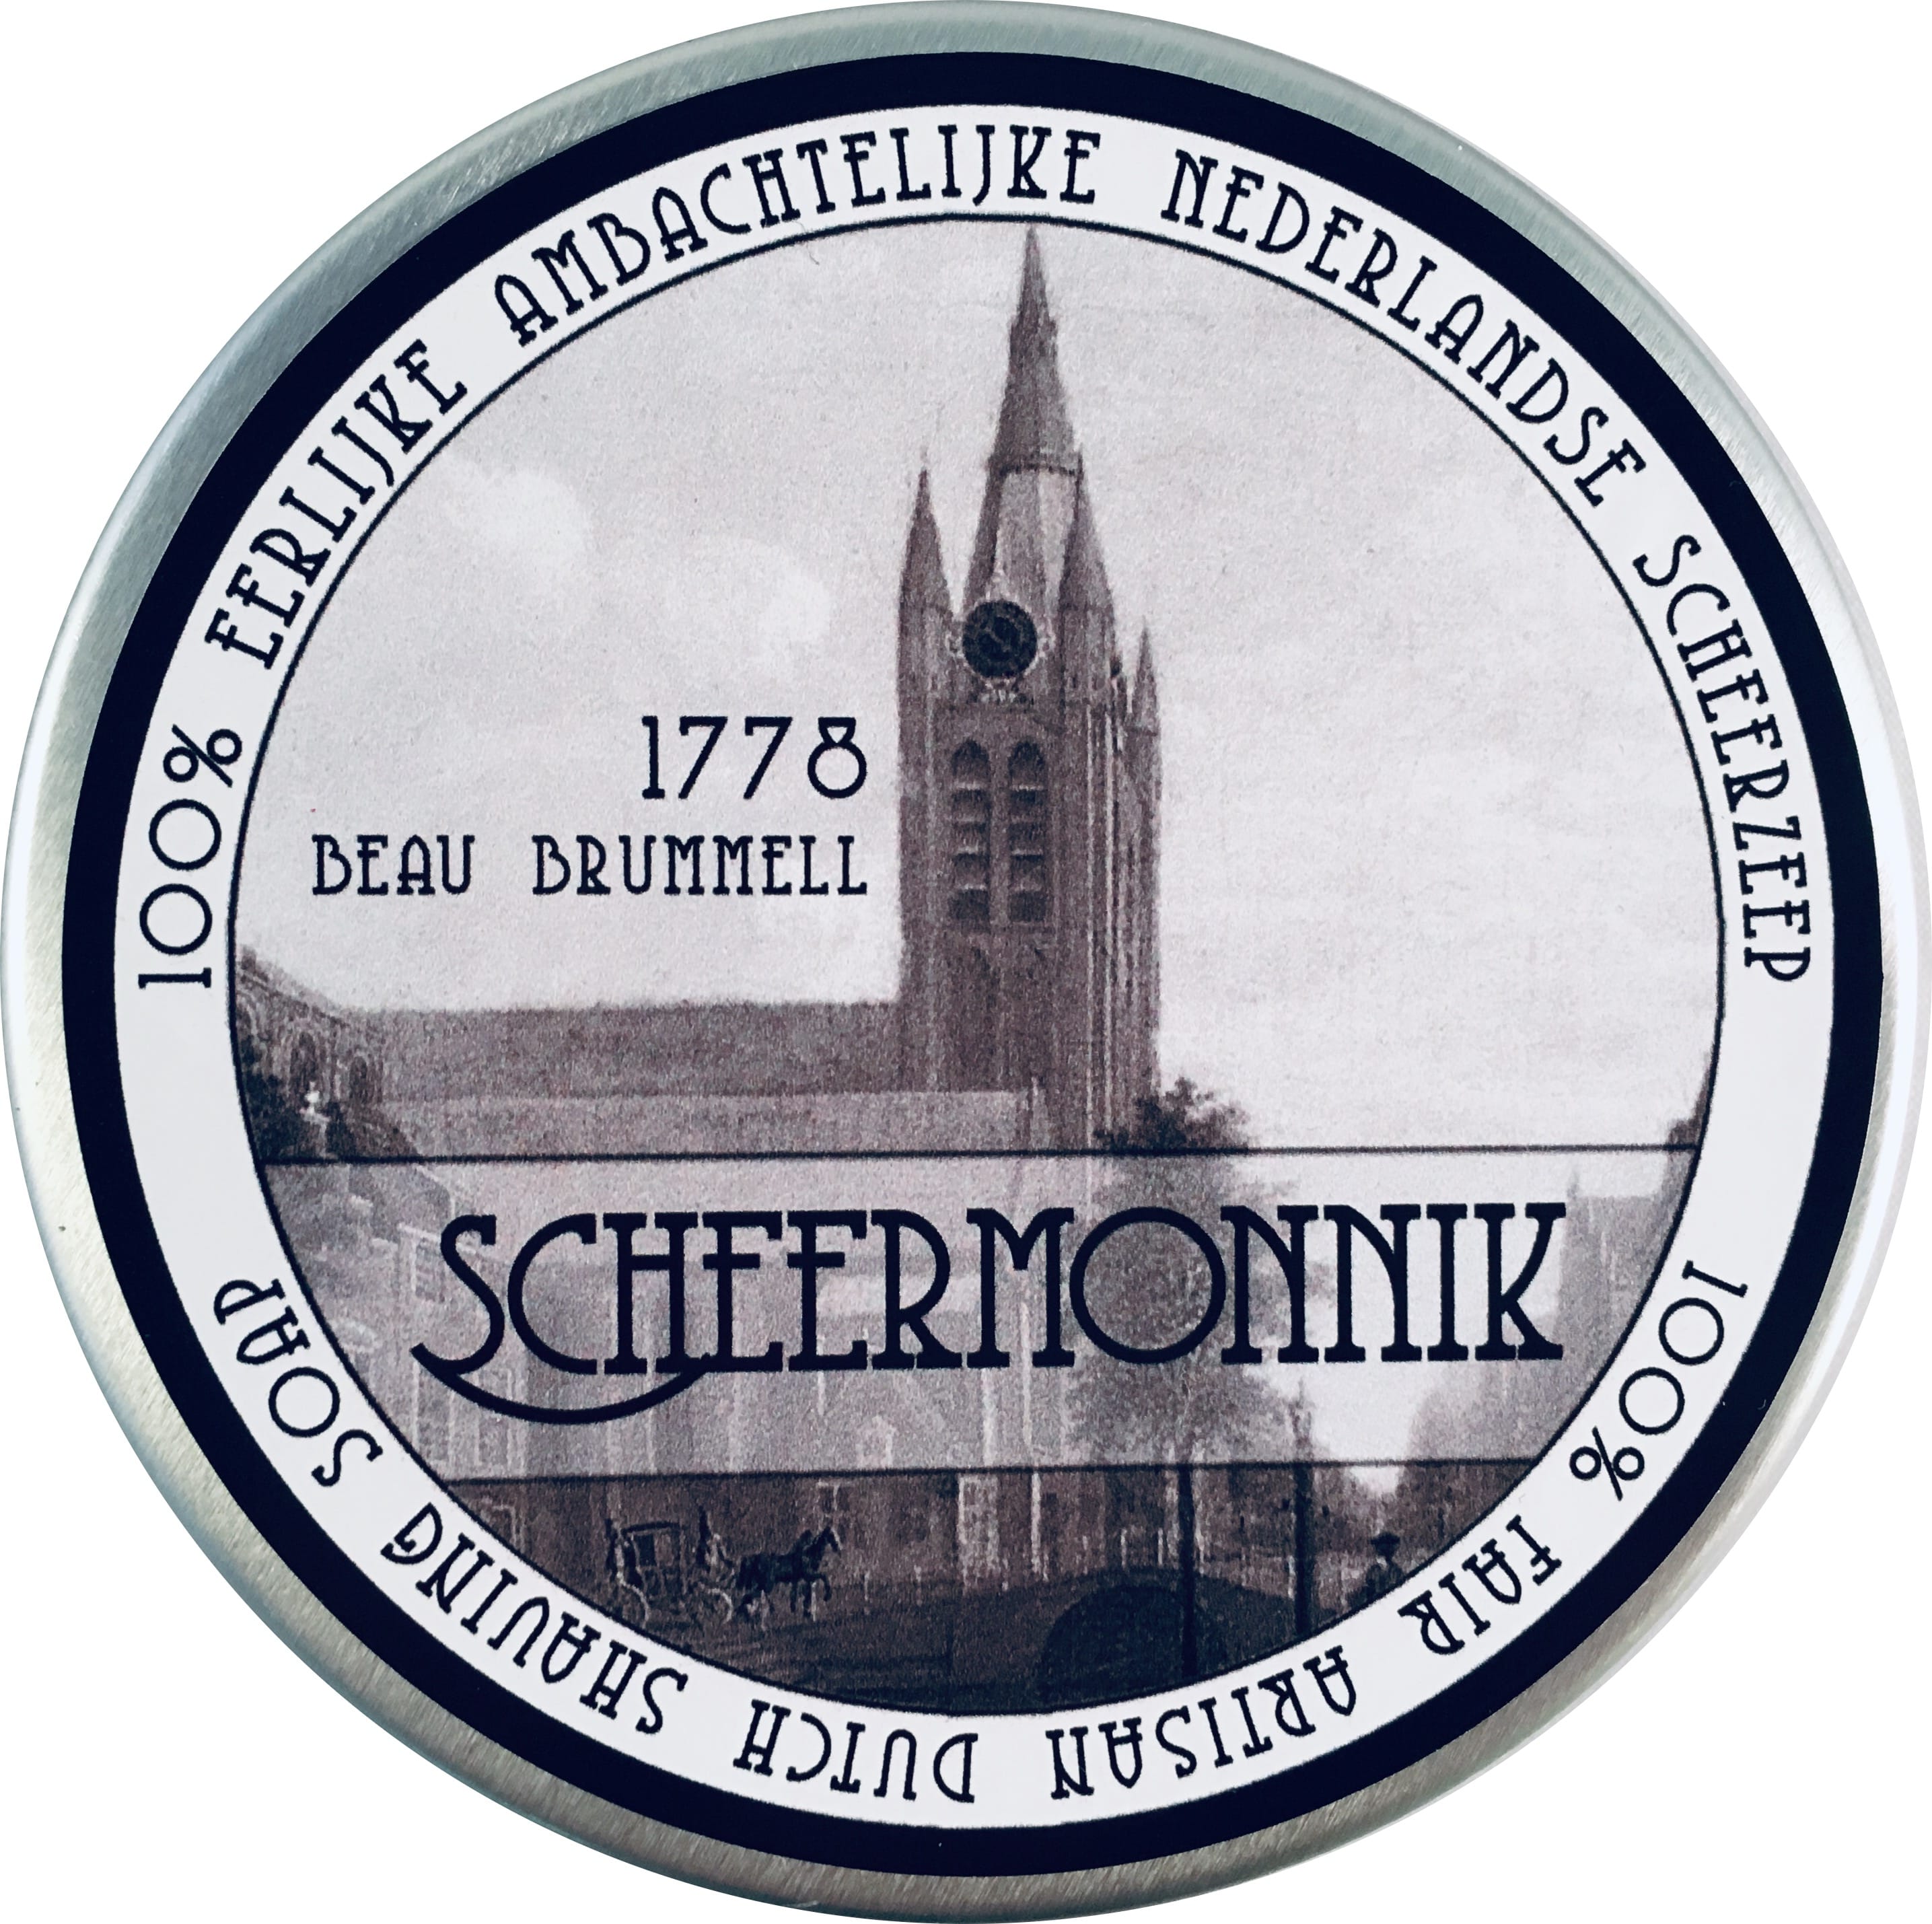 Scheermonnik Scheerzeep Traditional 1778 Beau Brummell 75g - 1.1 - SCH-1778